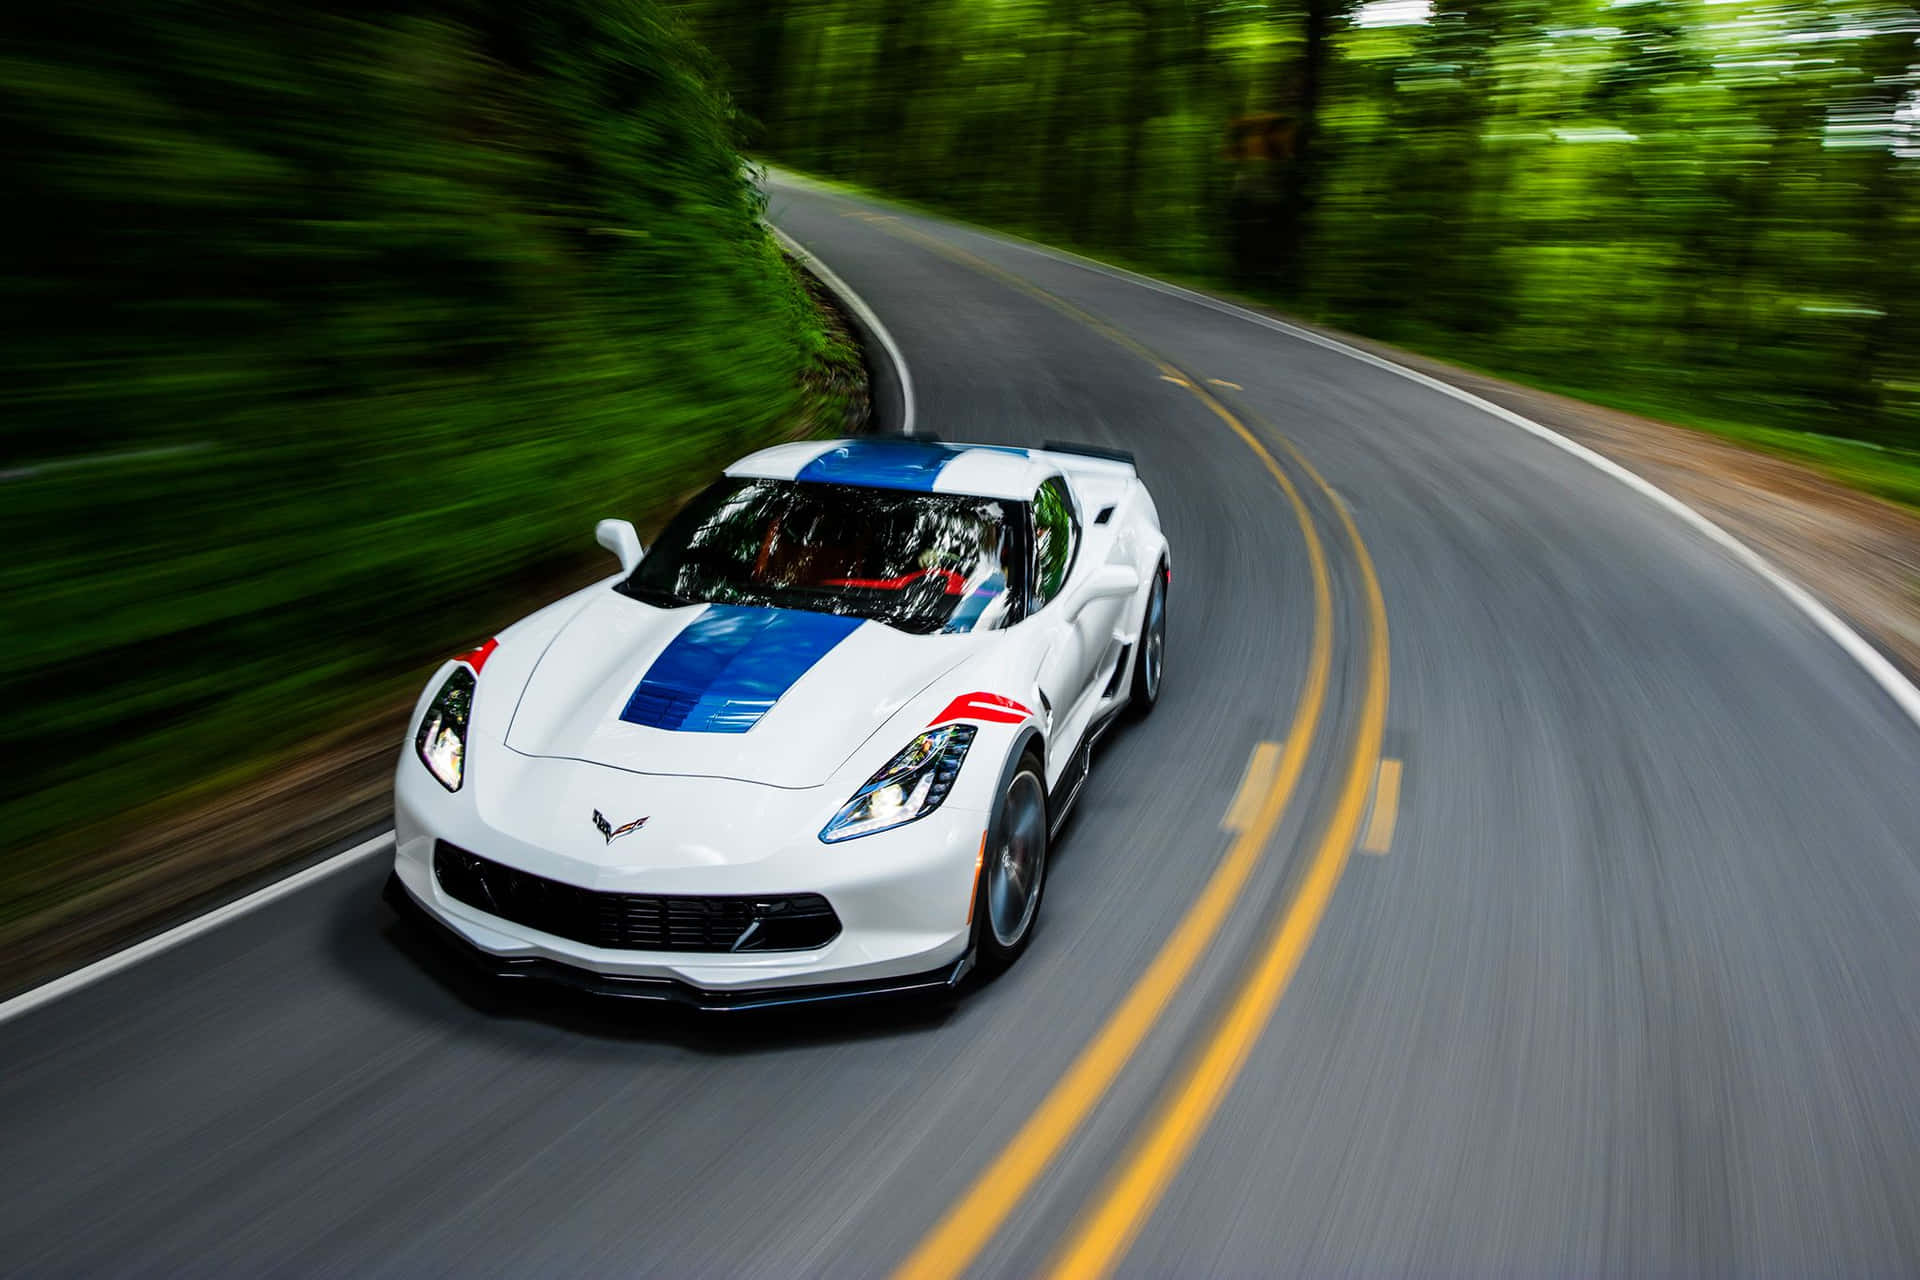 Stunning White Chevrolet Corvette Grand Sport Cruising on the Road Wallpaper